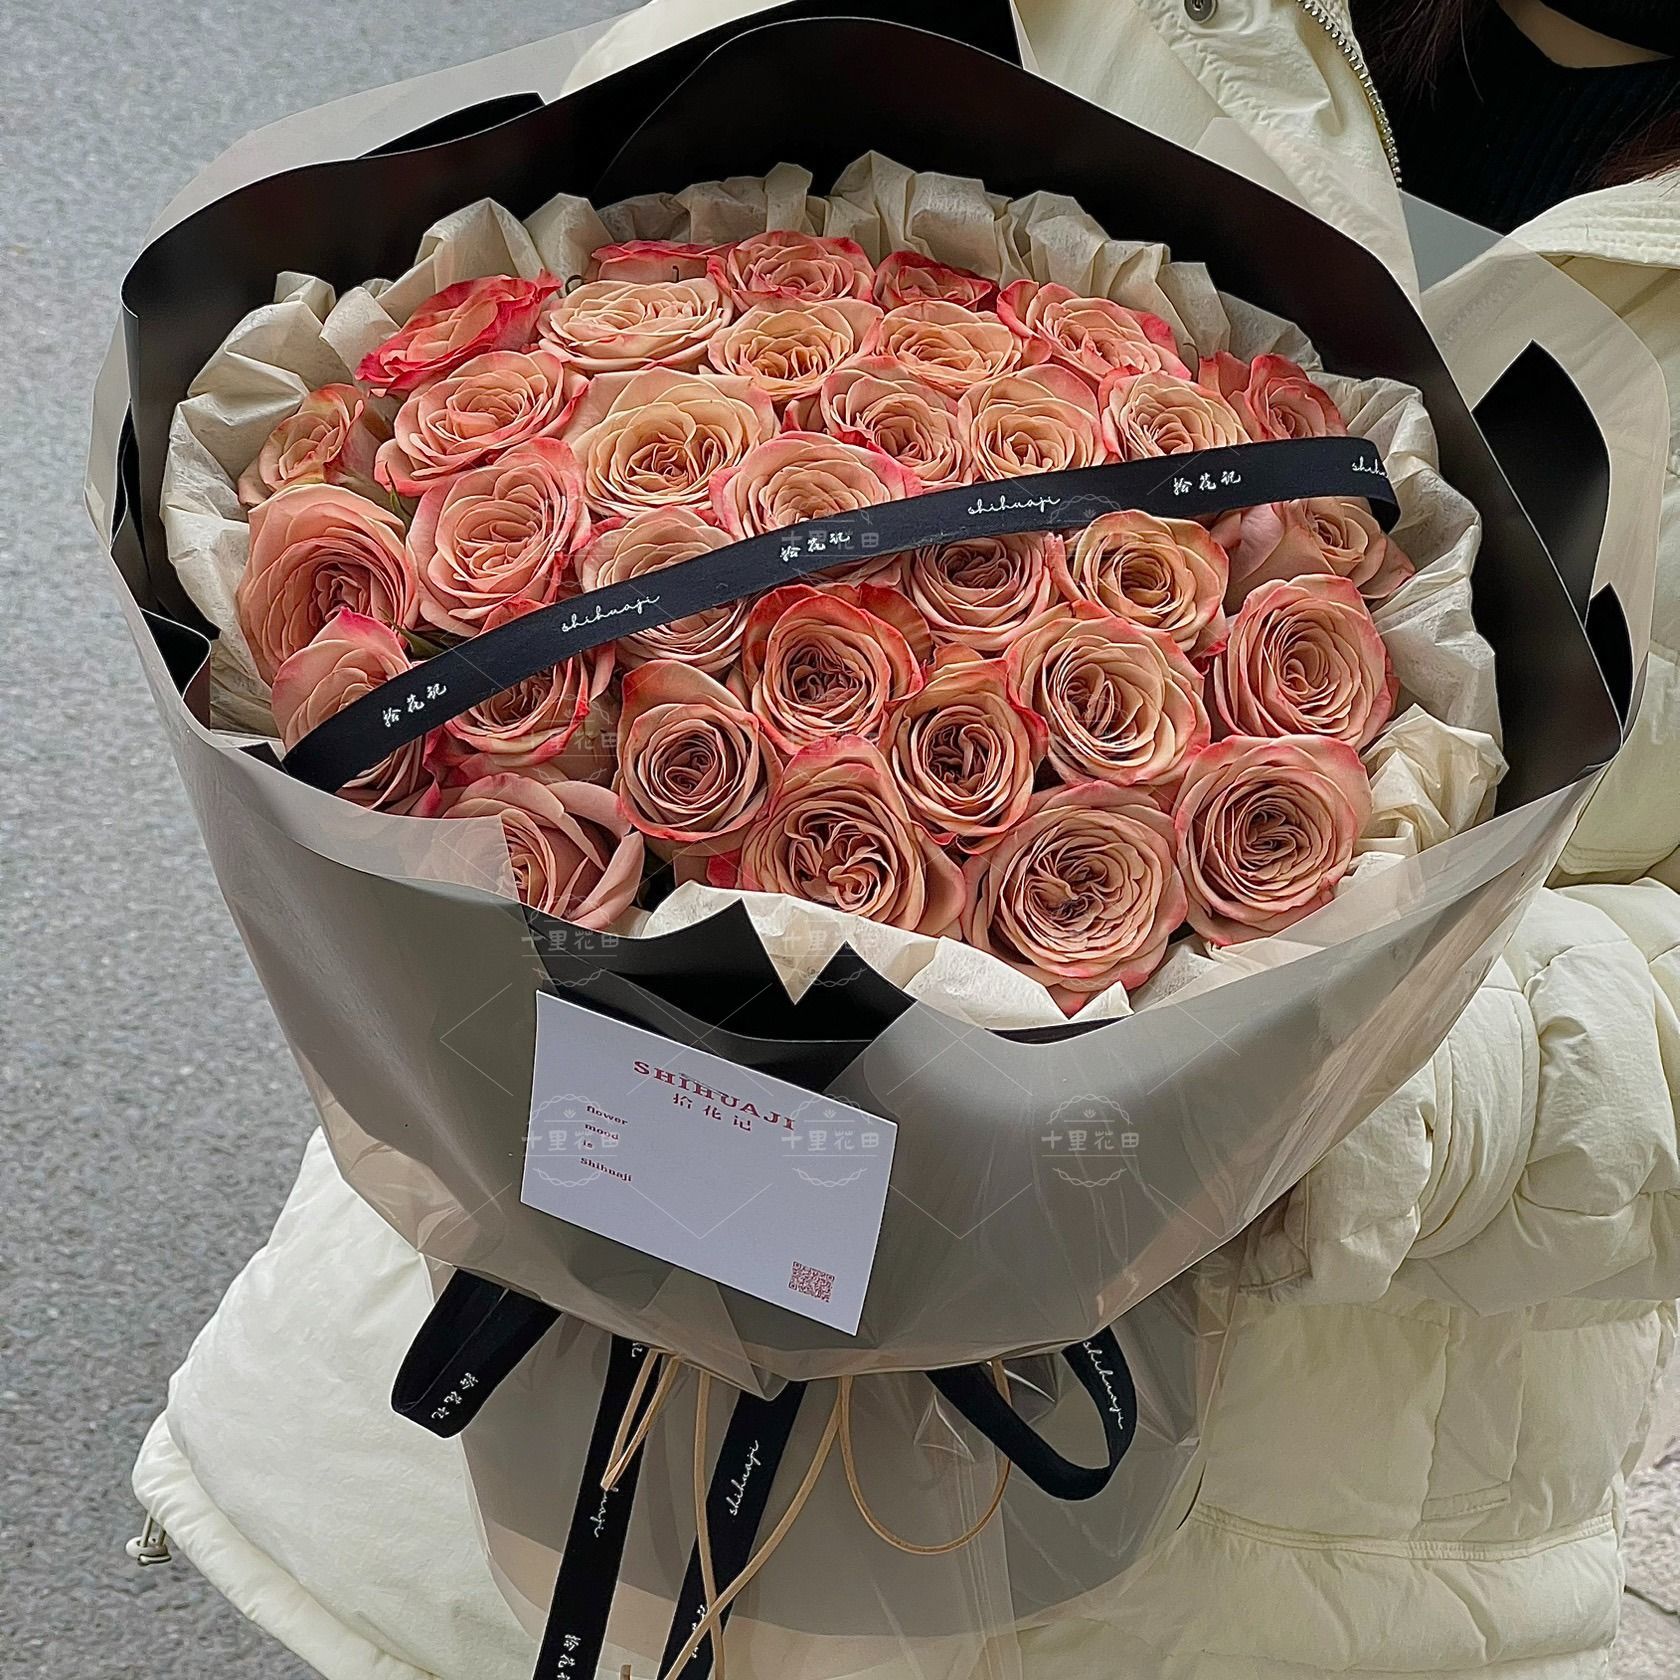 【为你沦陷】33朵卡布奇诺玫瑰花束鲜花生日鲜花生日礼物送女朋友花店送花上门